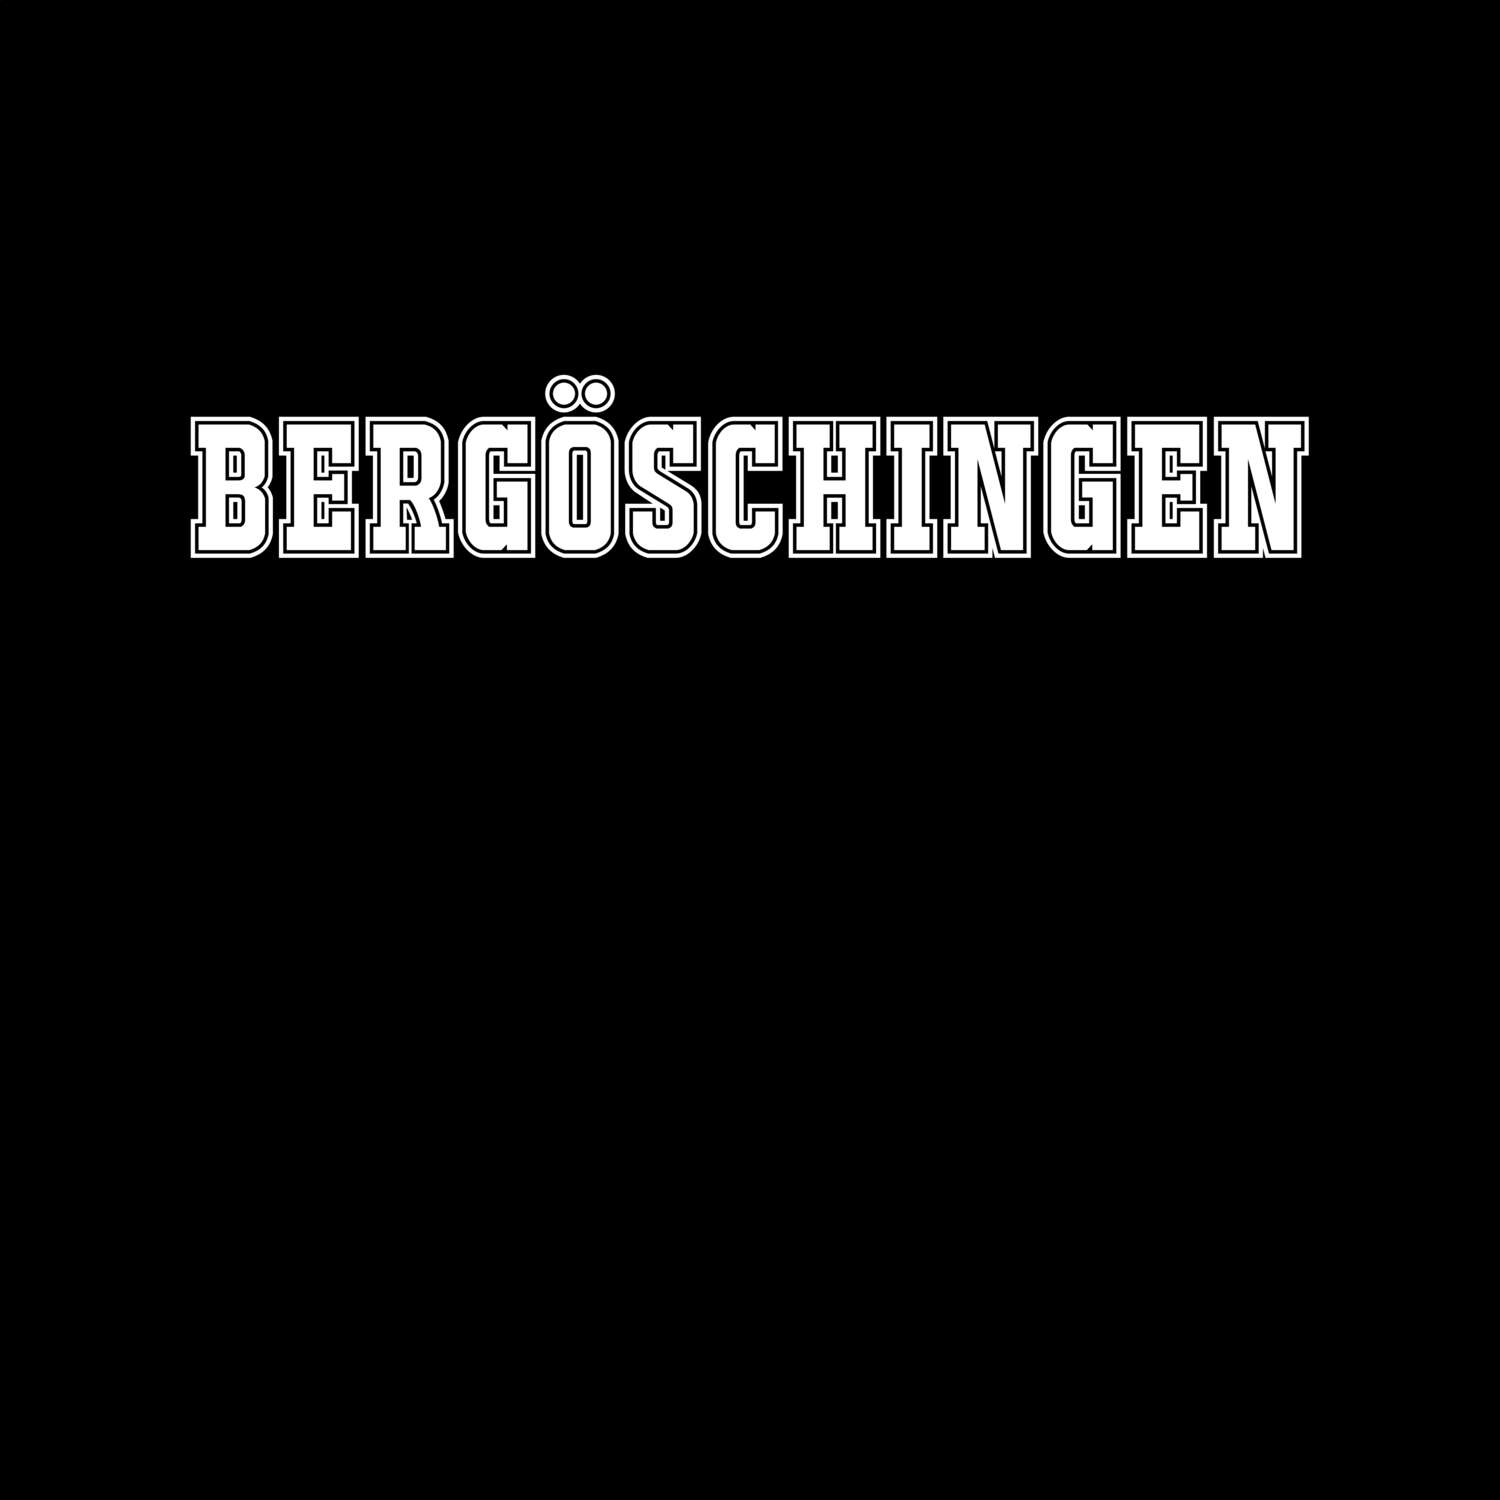 Bergöschingen T-Shirt »Classic«